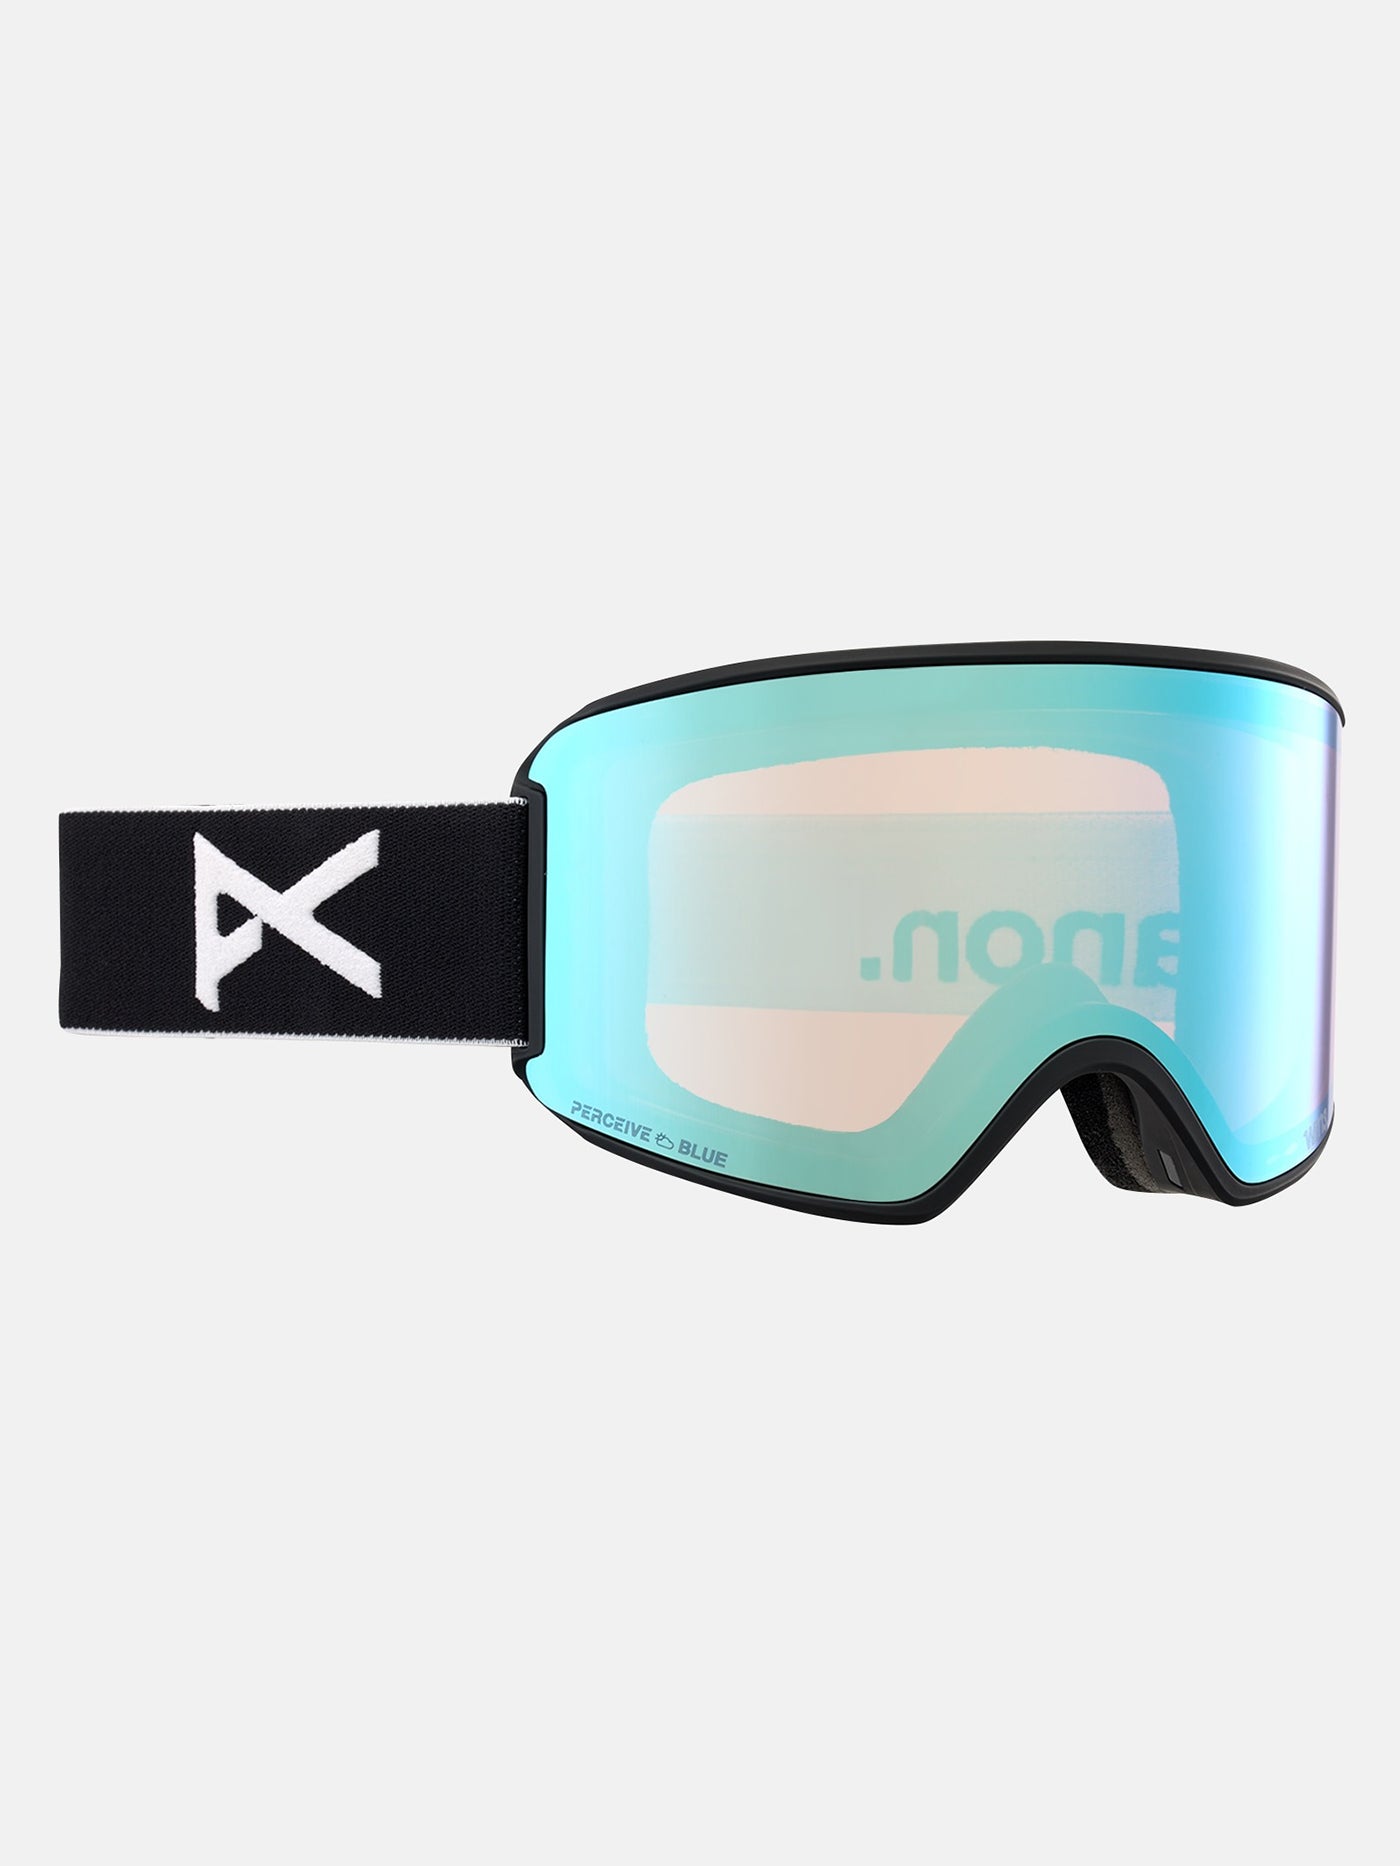 Anon WM3 Snowboard Goggle 2025